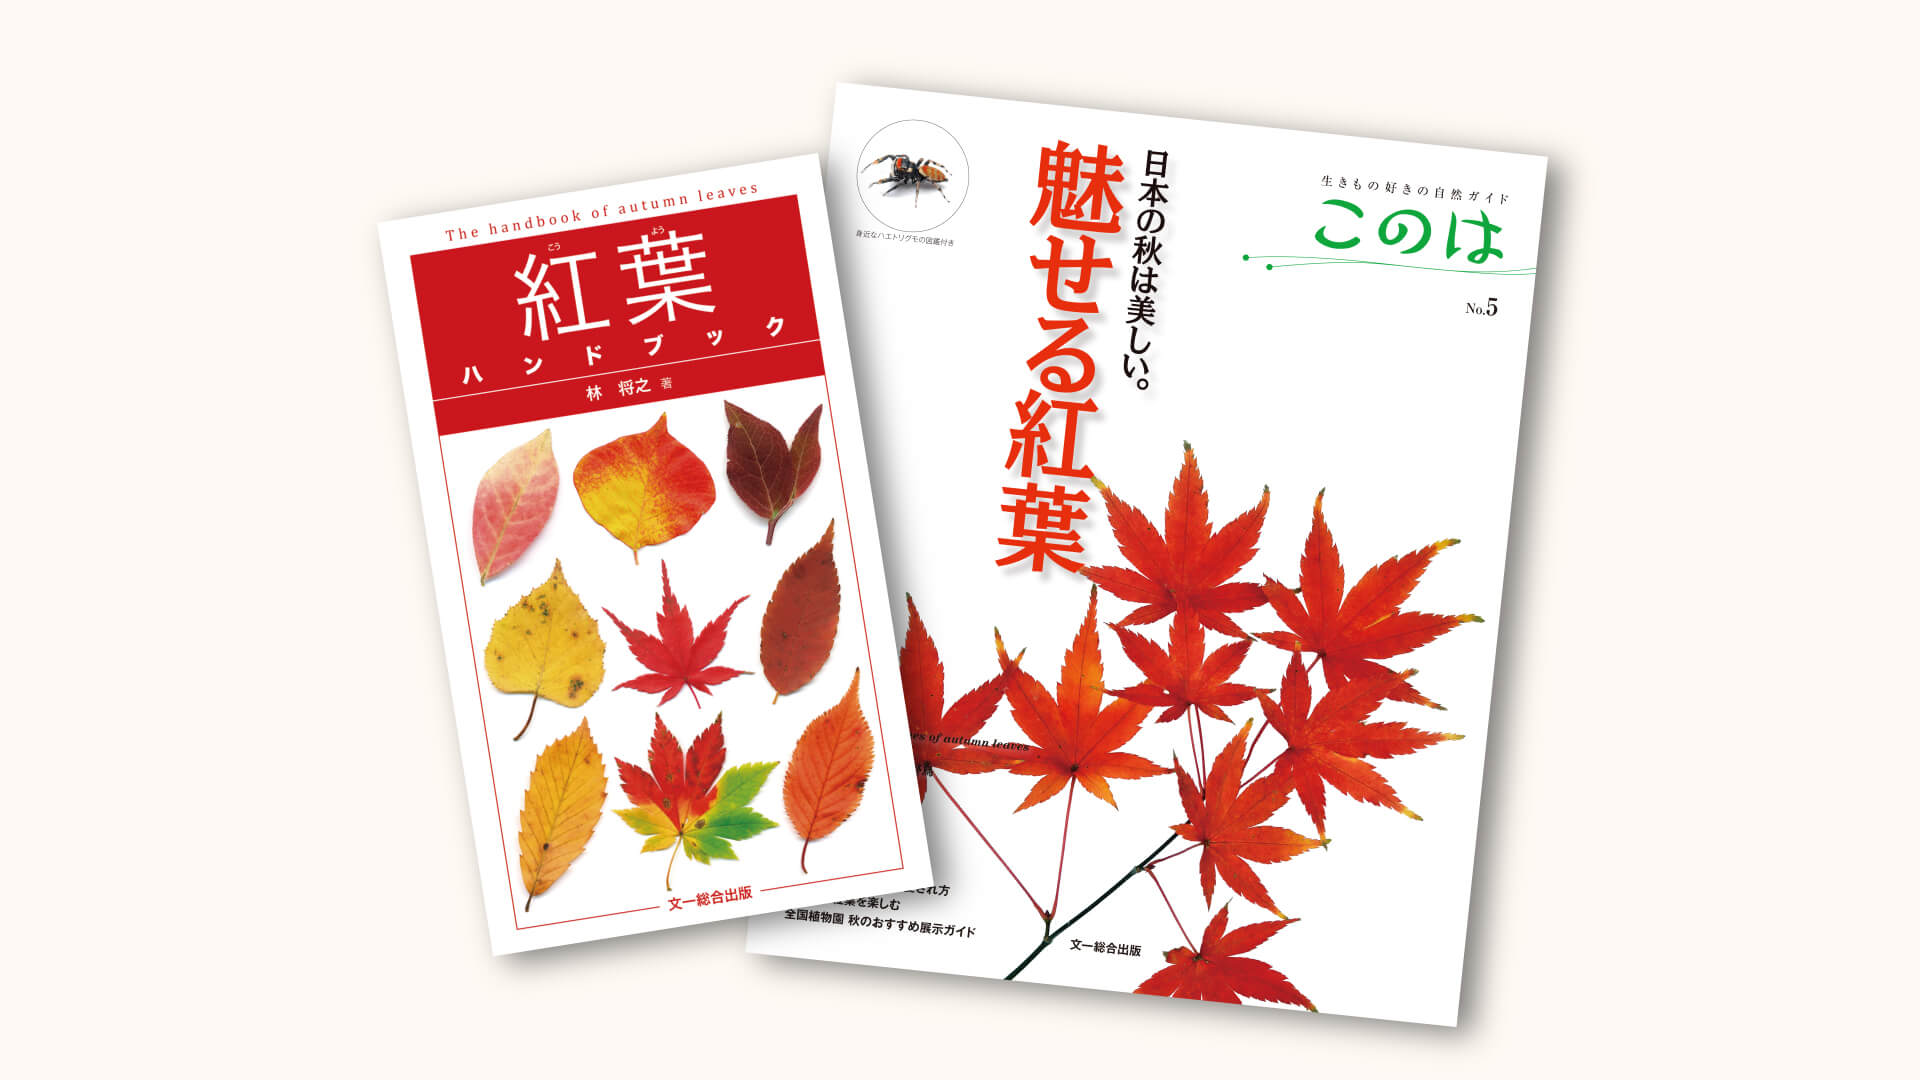 なぜ紅葉するの 葉の色が変わる 色素 のメカニズム 記事カテゴリ Buna Bun Ichi Nature Web Magazine 文一総合出版